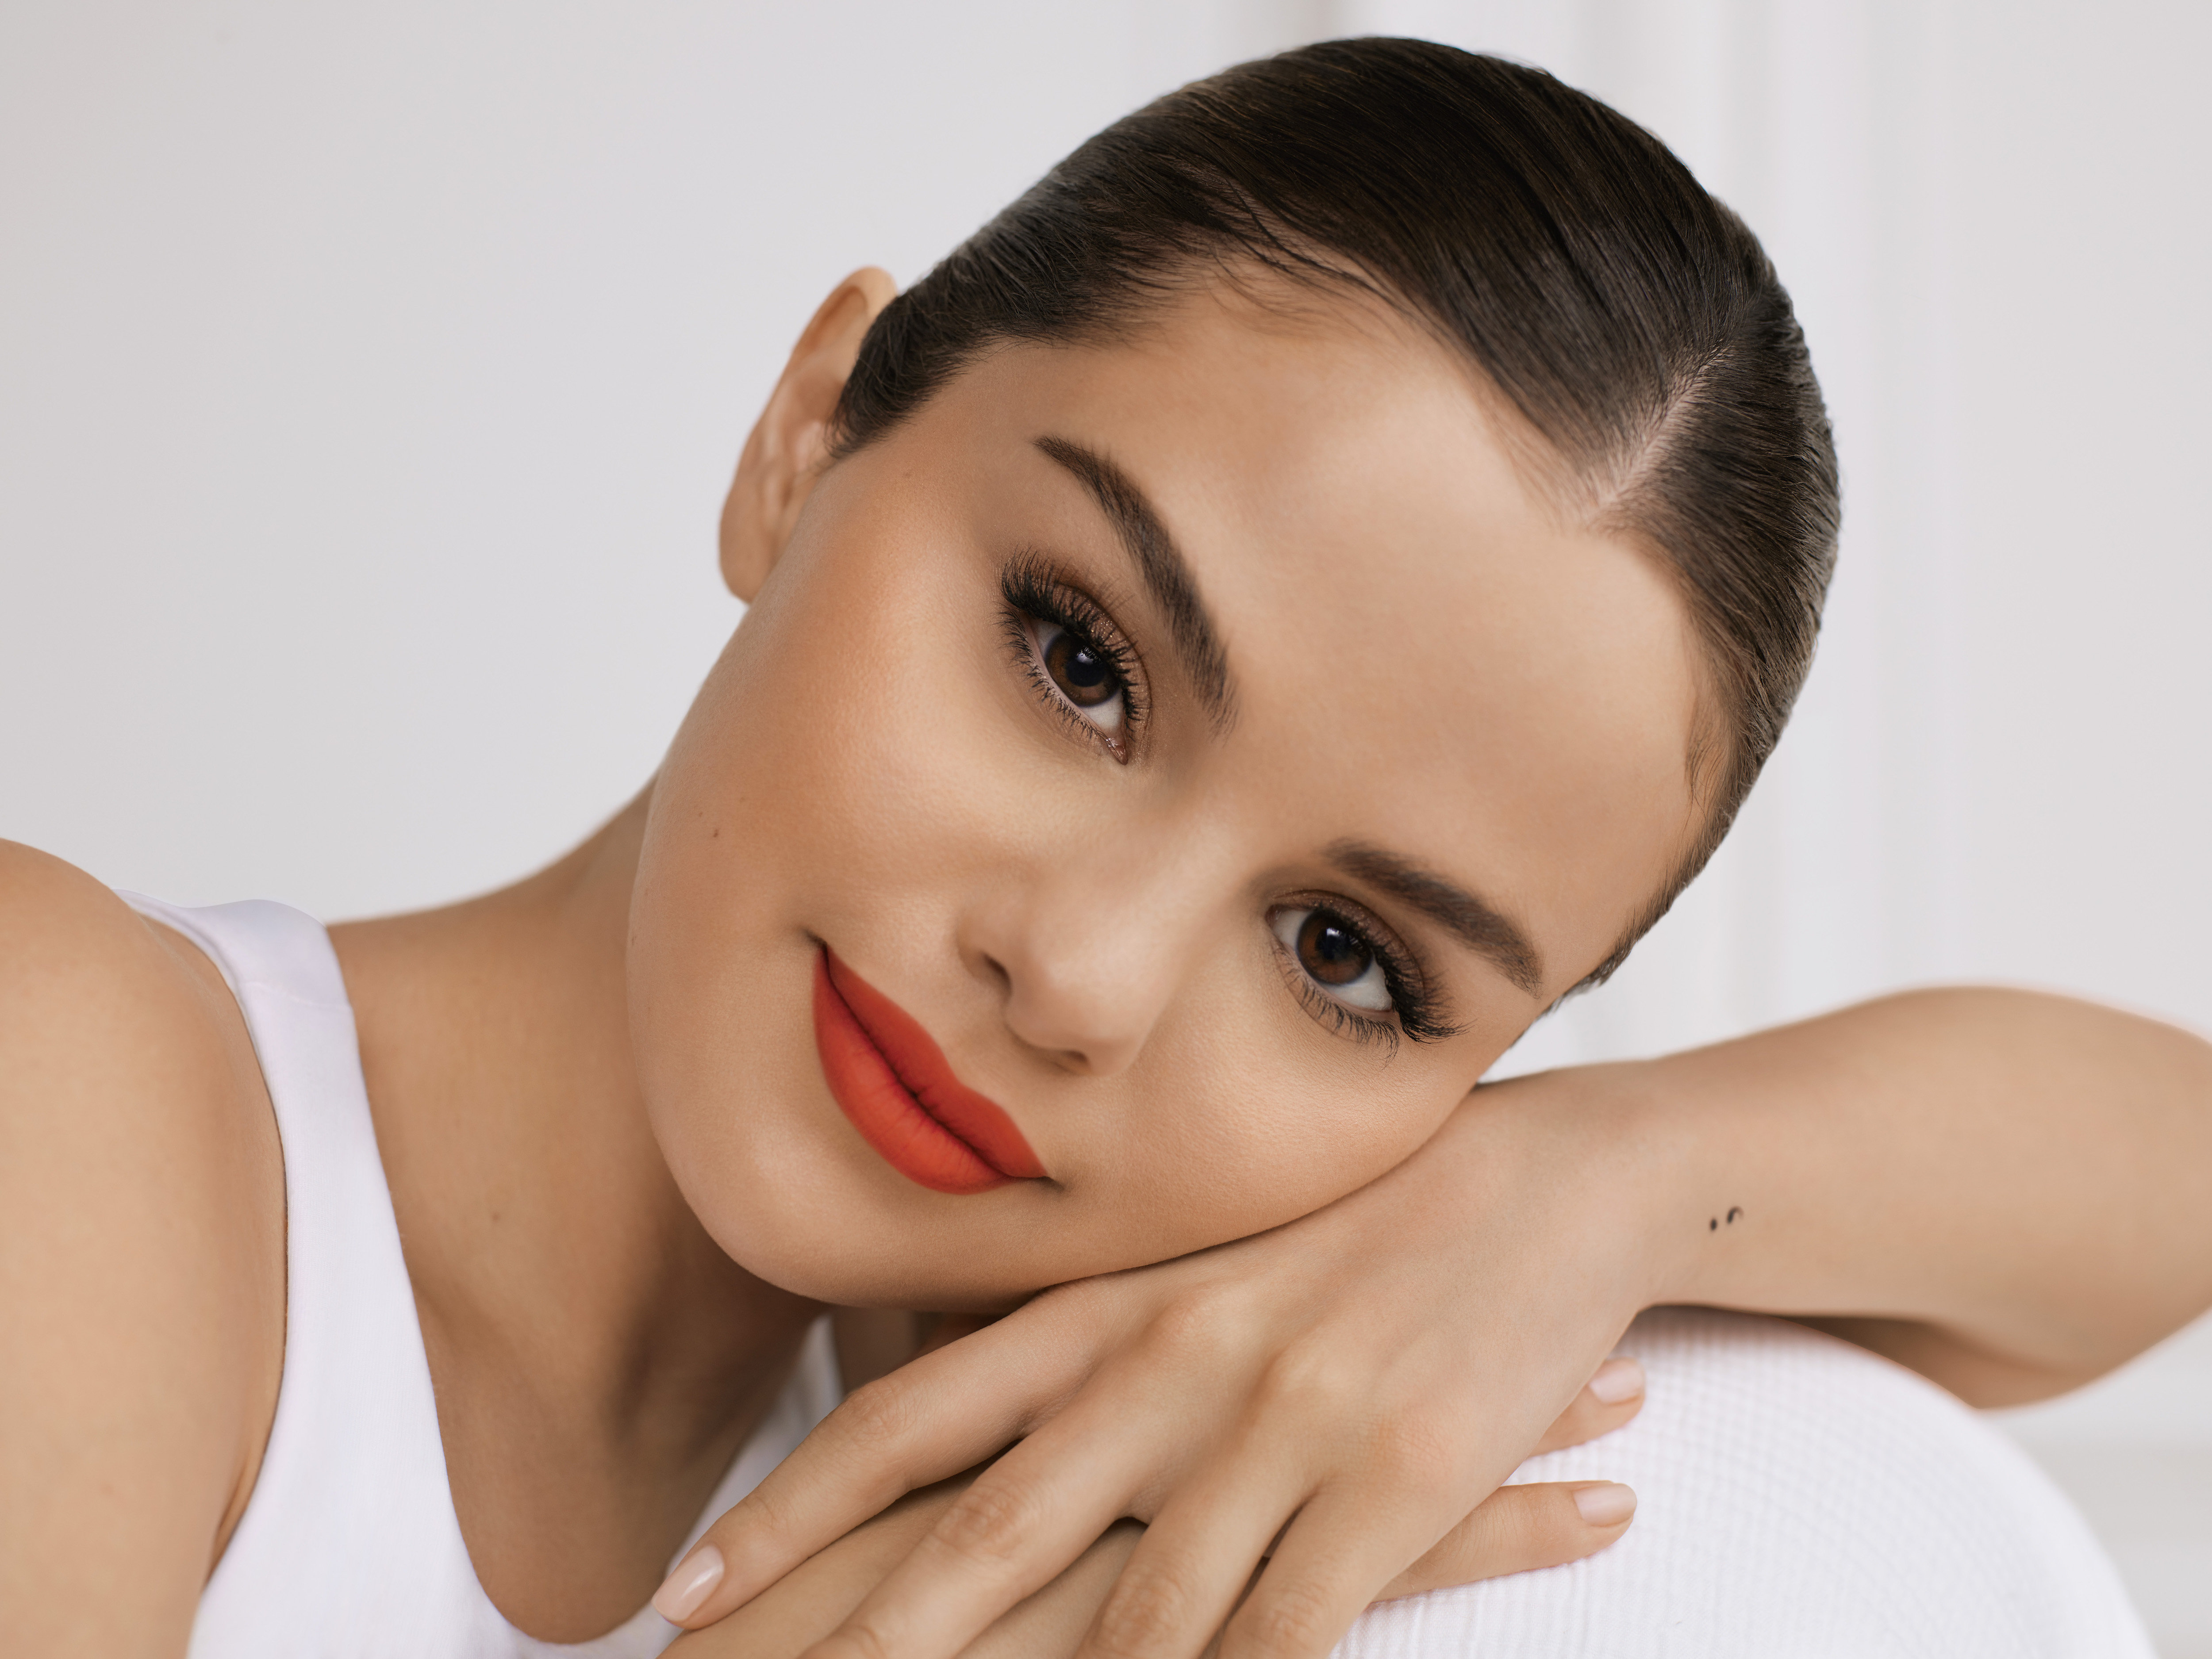 Photos n°2 : Selena Gomez is a Make Up Guru!